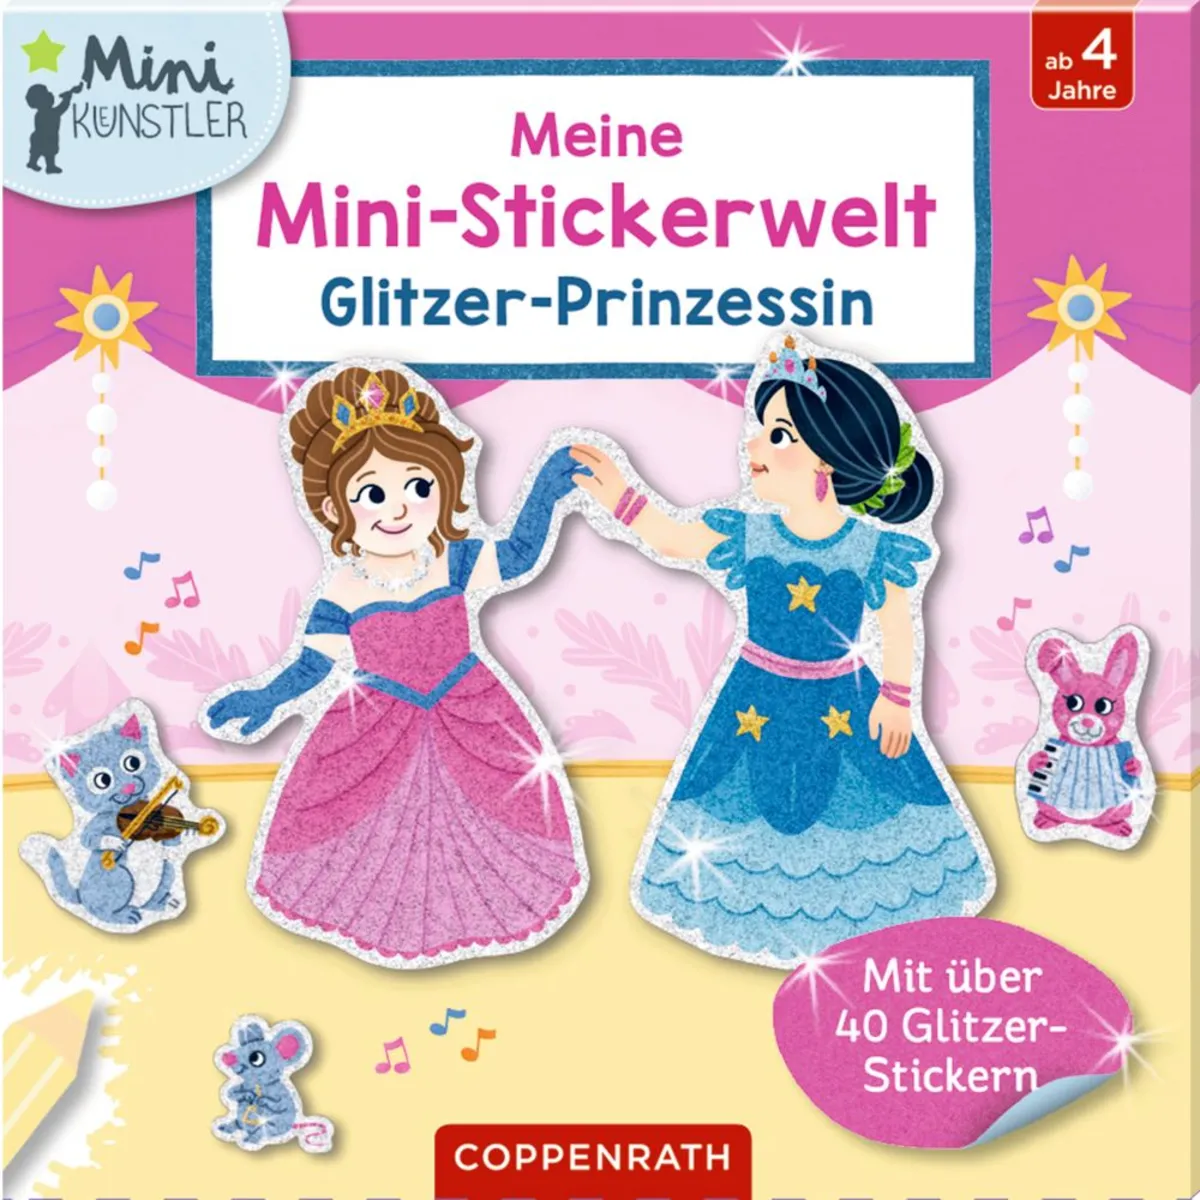 Coppenrath Verlag Meine Mini-Stickerwelt: Glitzer-Prinzessin (Mini-Künstler) - Bild 1 von 1